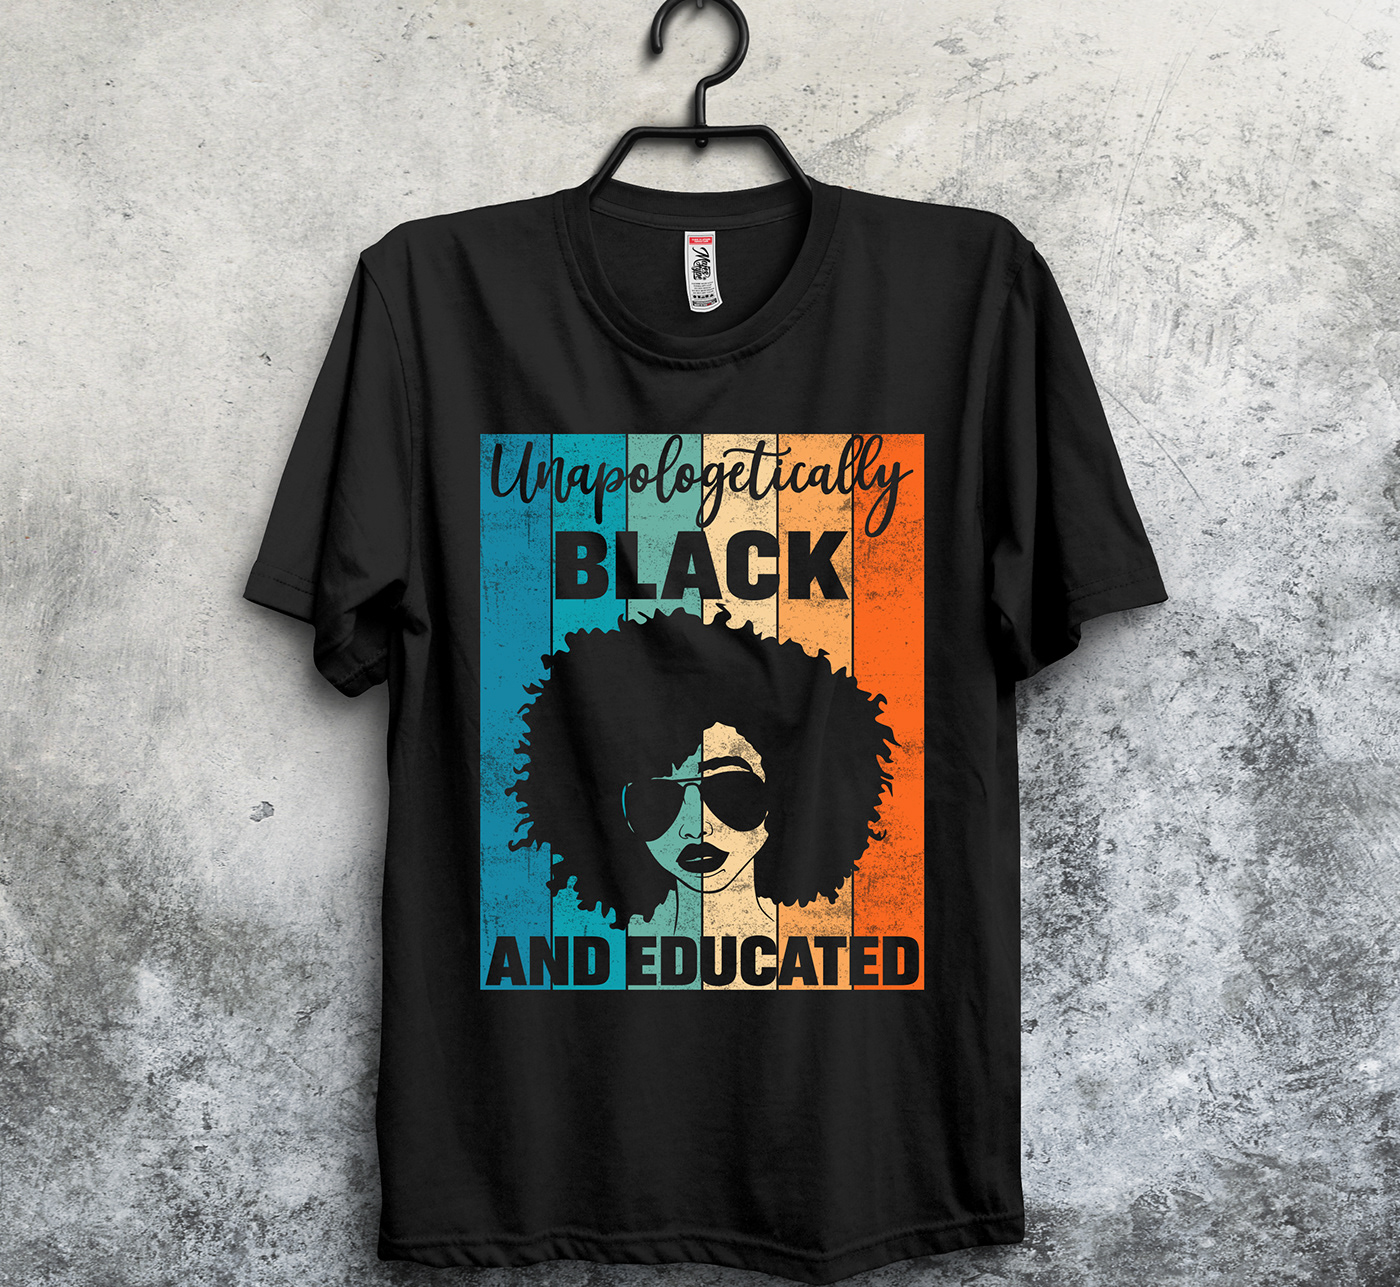 black history t-shirt blackexcellence blackhistory BLACKLIVESMATTER blackpower custom tshirt design Tshirt design ideas tshirt design maker Typography TShirt vintage tshirt